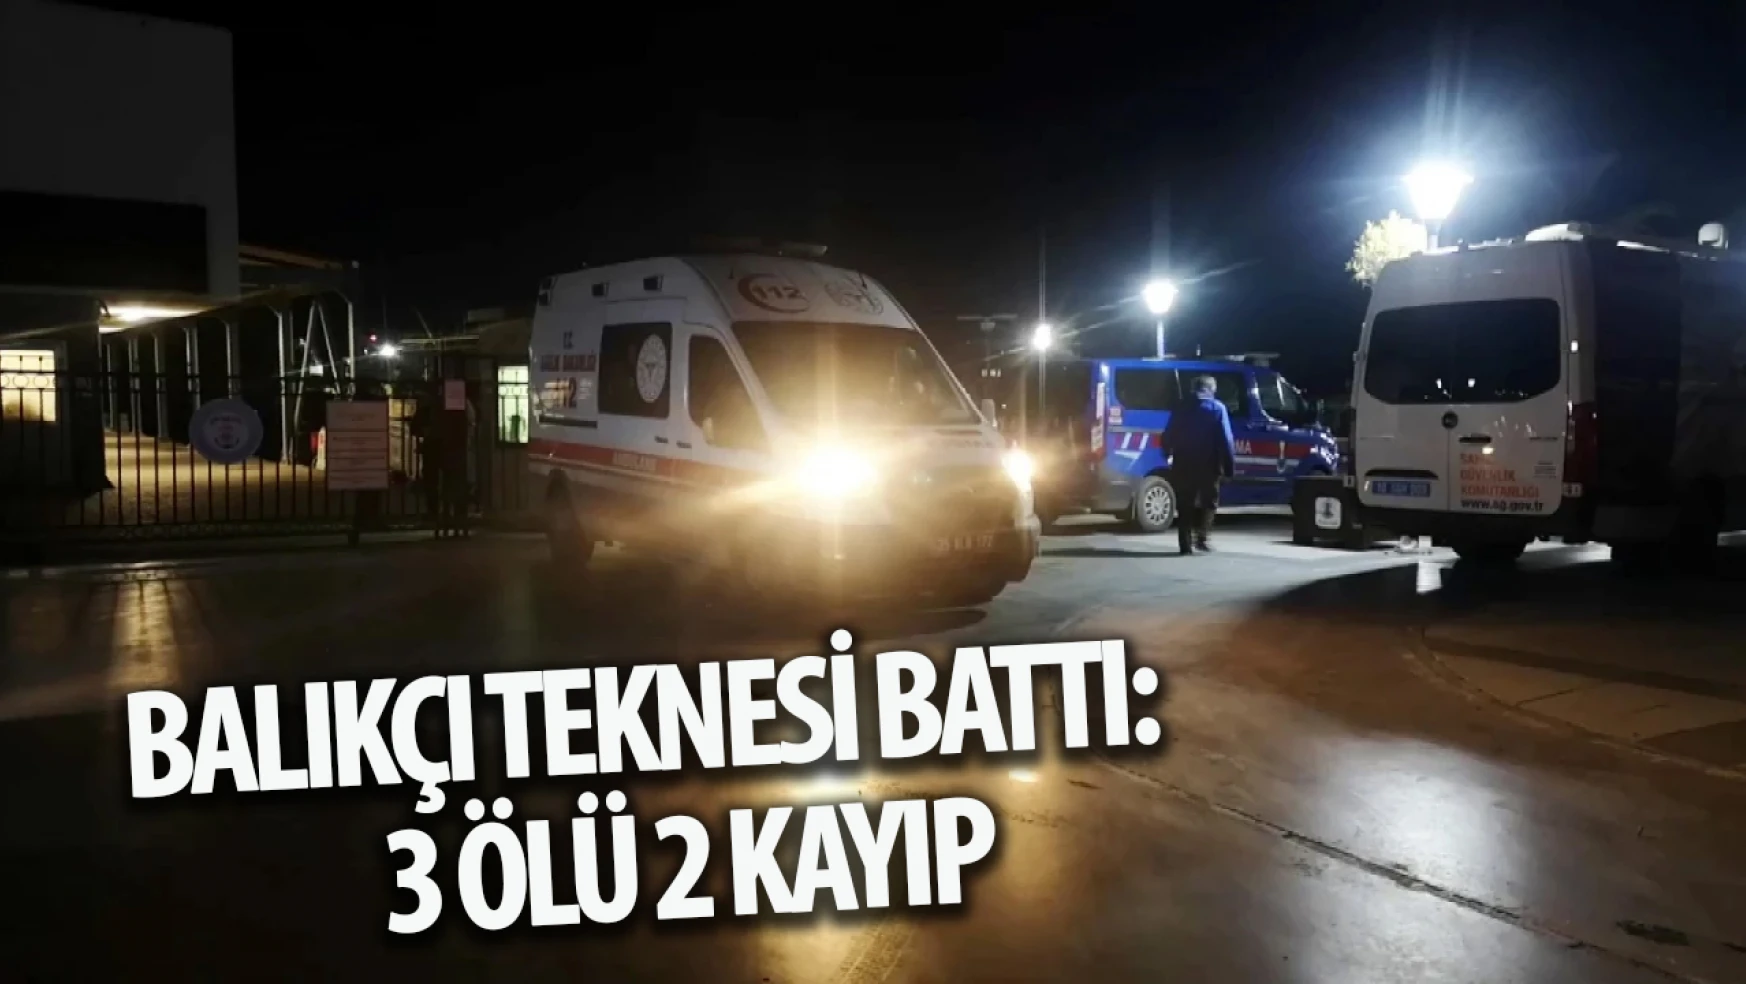 İzmir'de balıkçı teknesi battı: 3 ölü 2 kayıp!